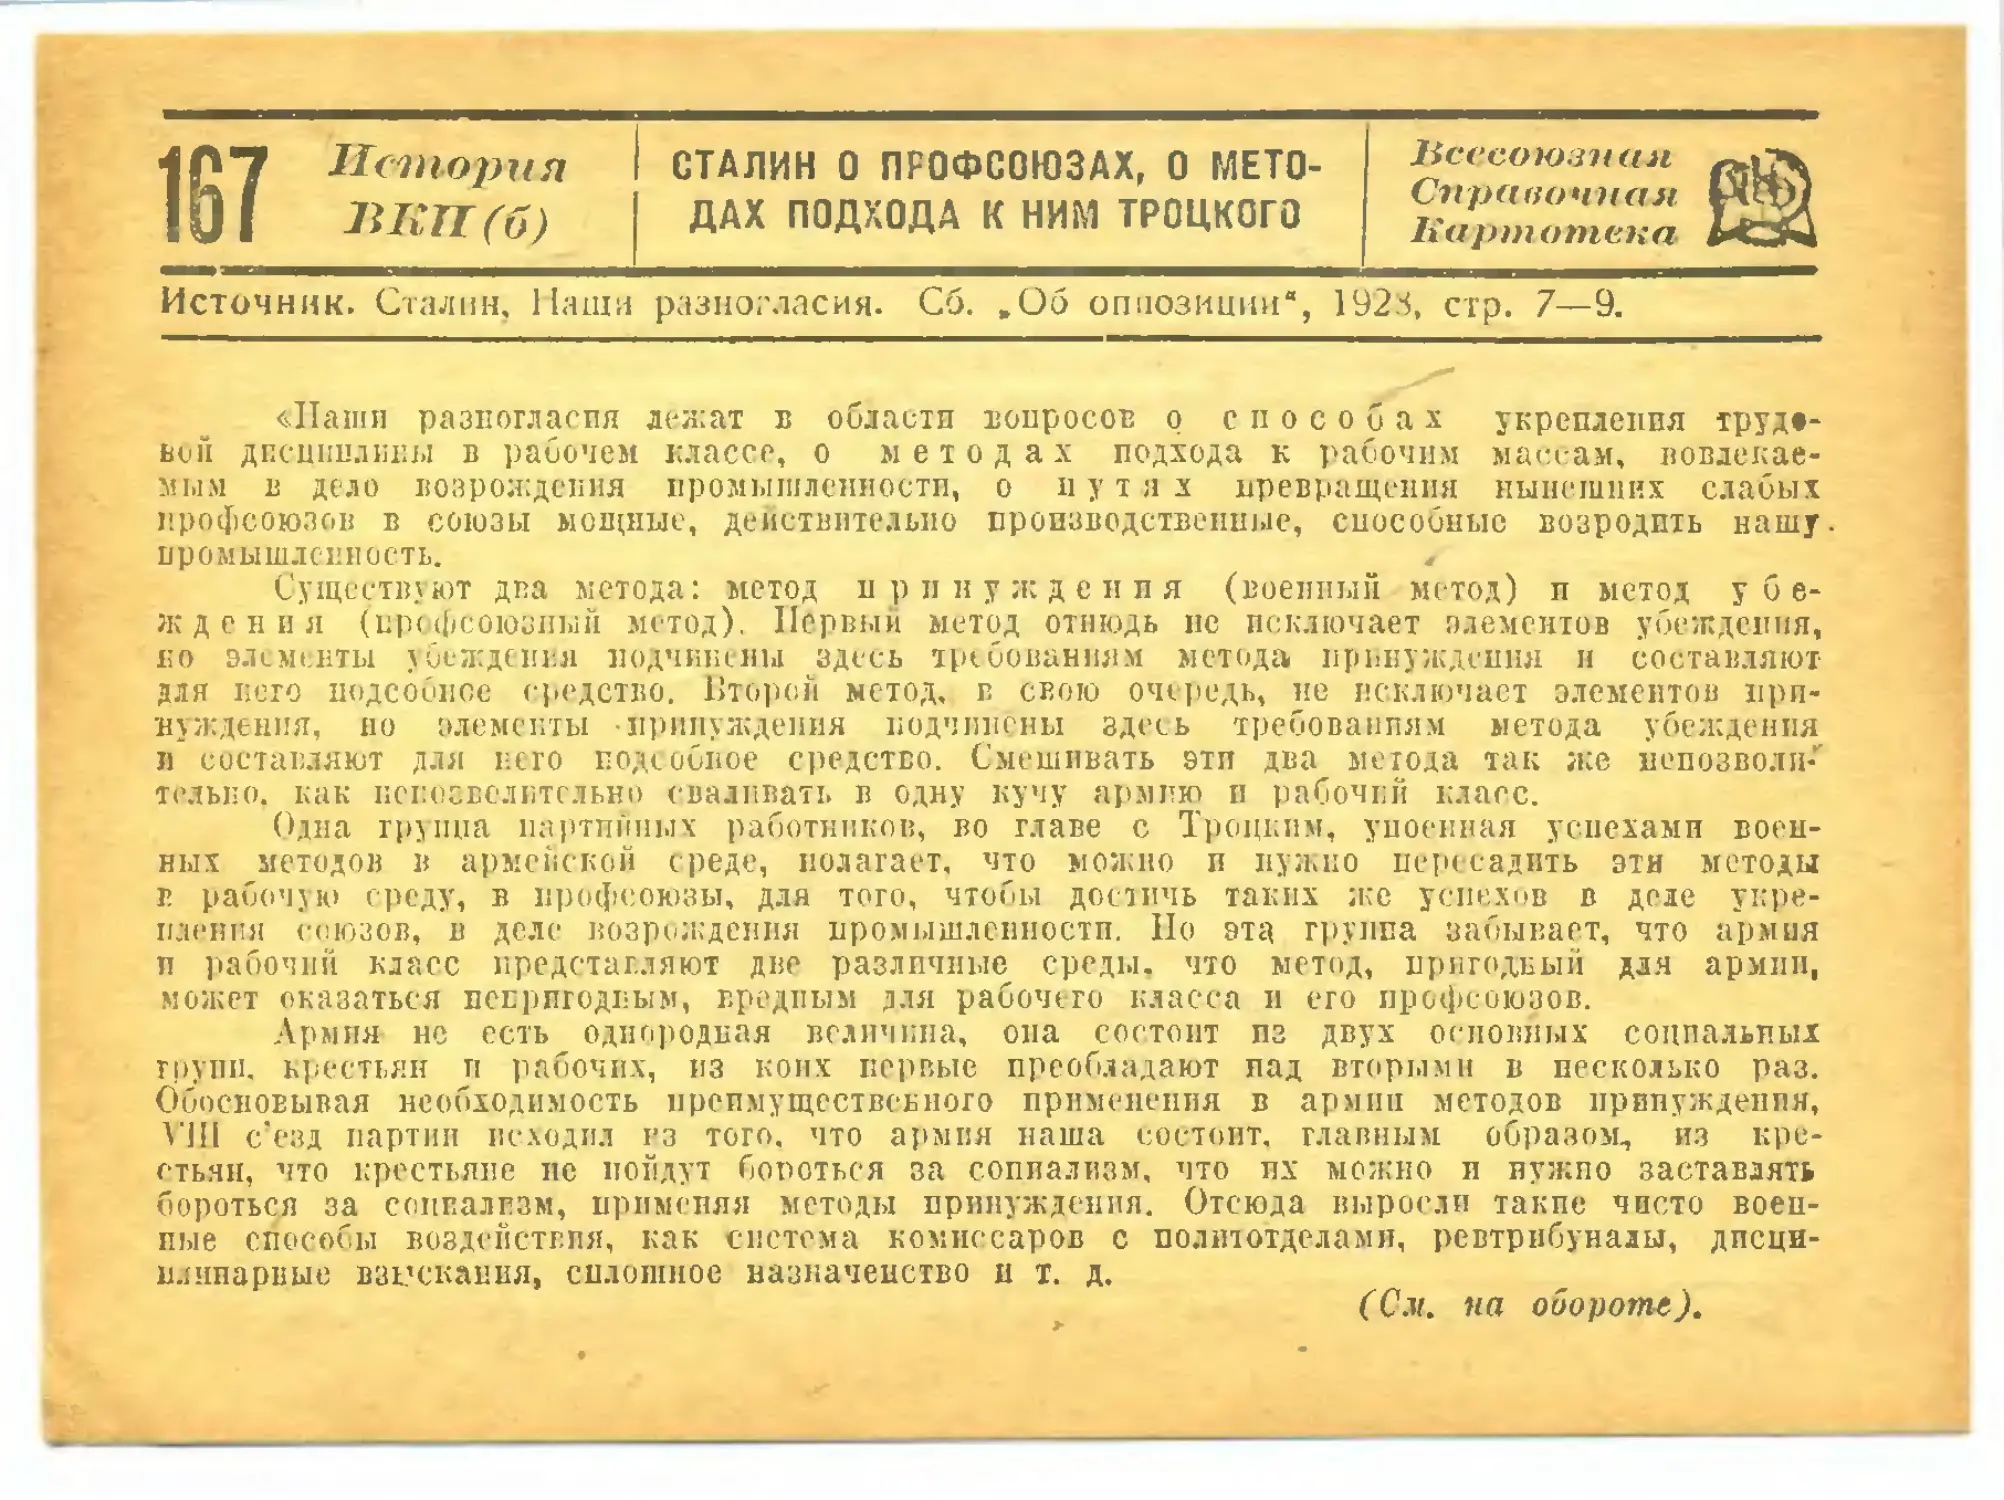 167. Сталин о профсоюзах, о методах подхода к ним Троцкого.